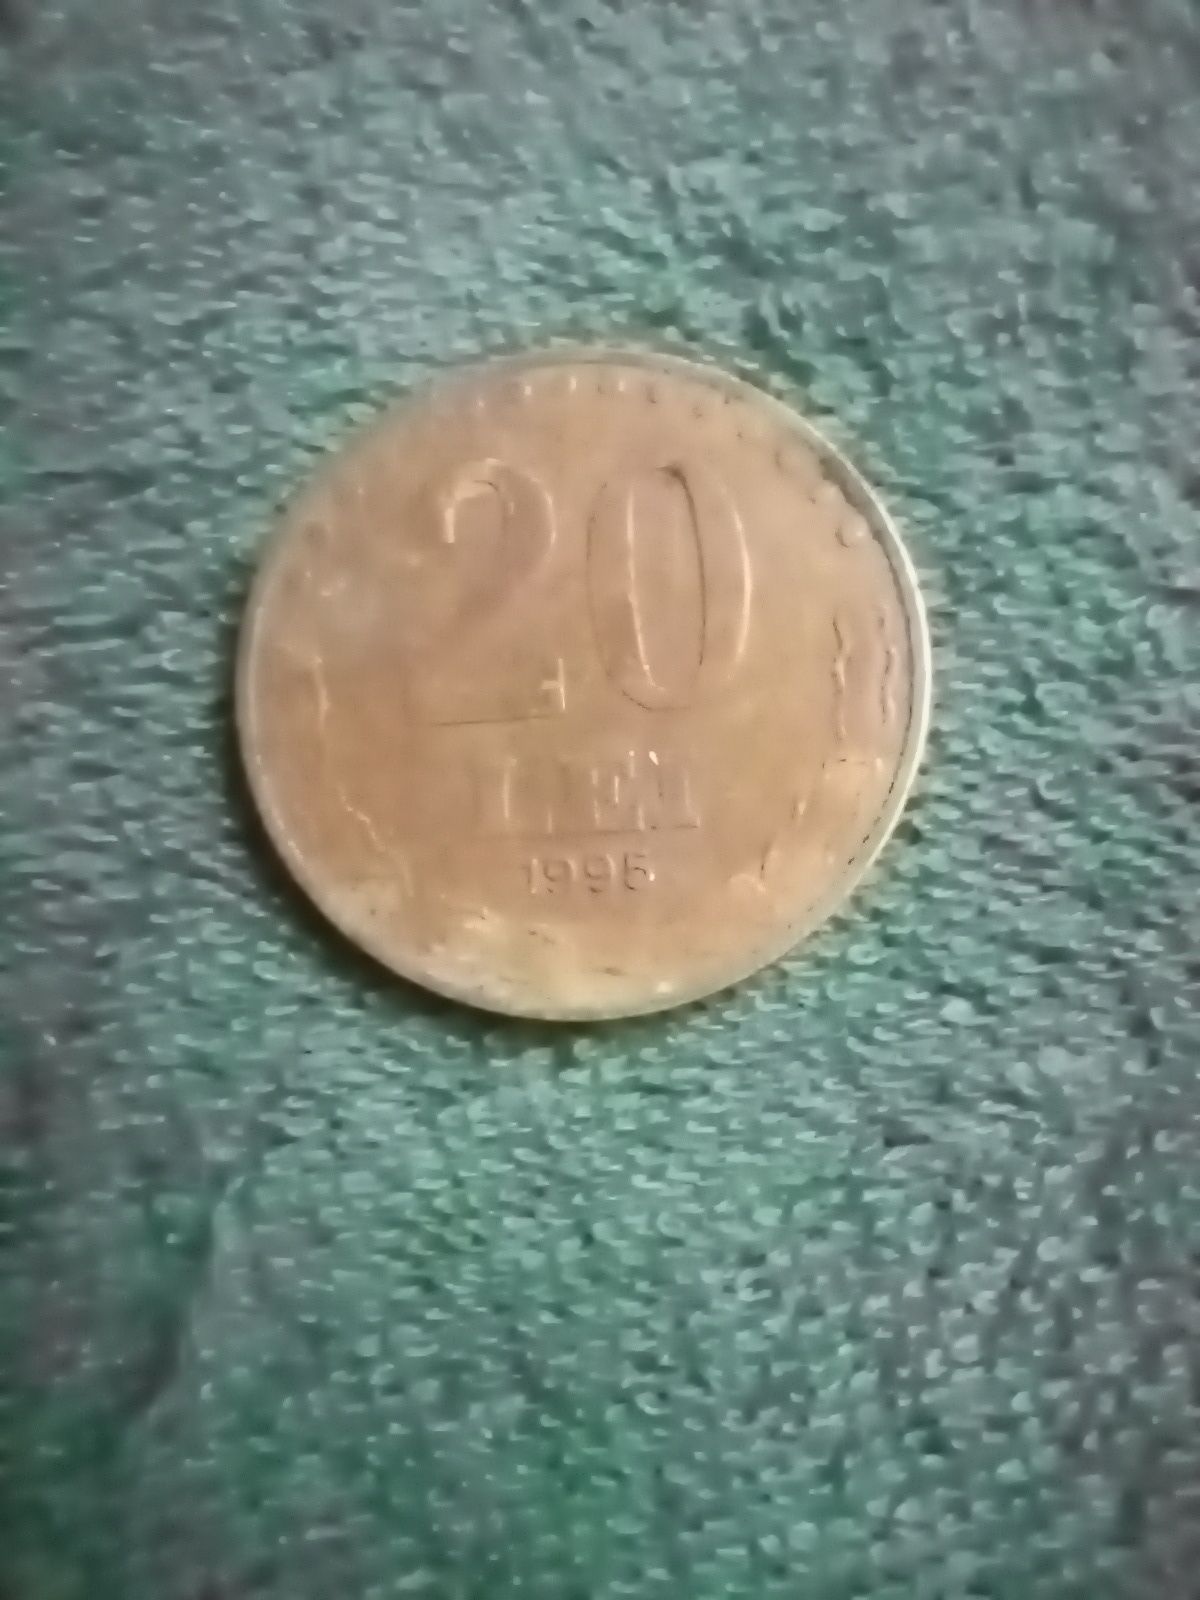 Monede vechi de toate felurile